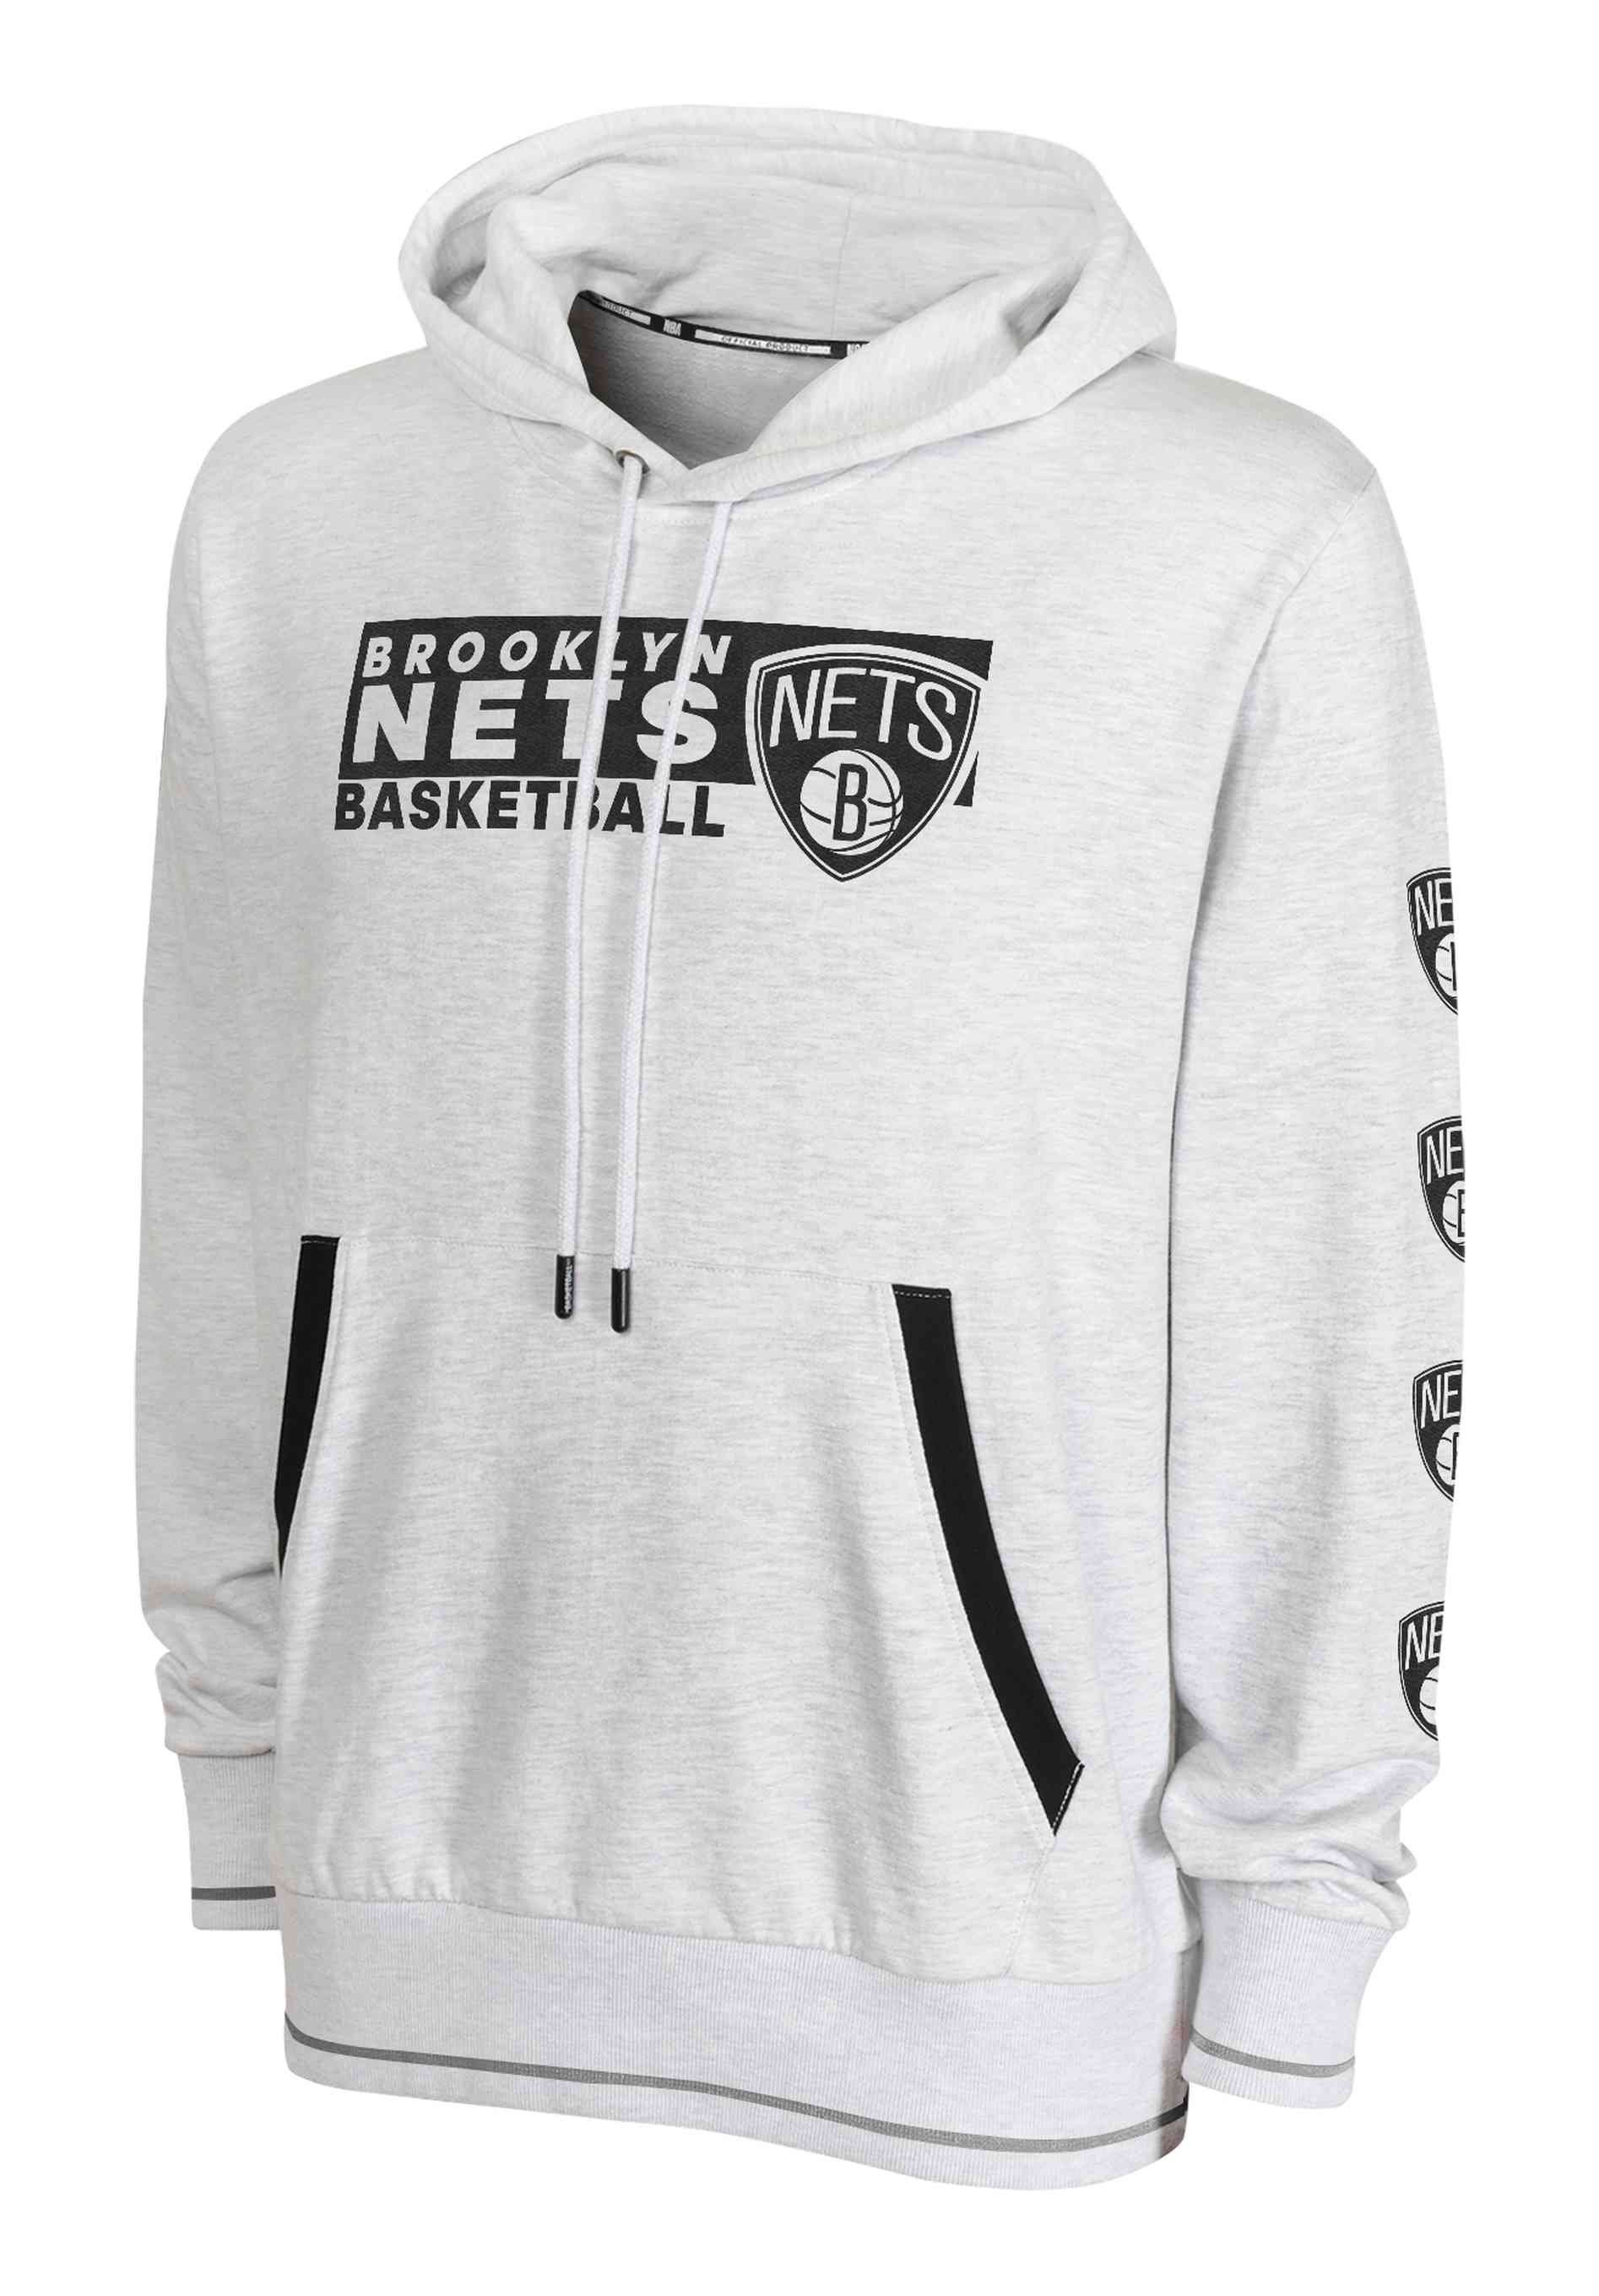 Outerstuff Hoodie NBA Brooklyn Nets Team Sweatshirt Kevin Durant